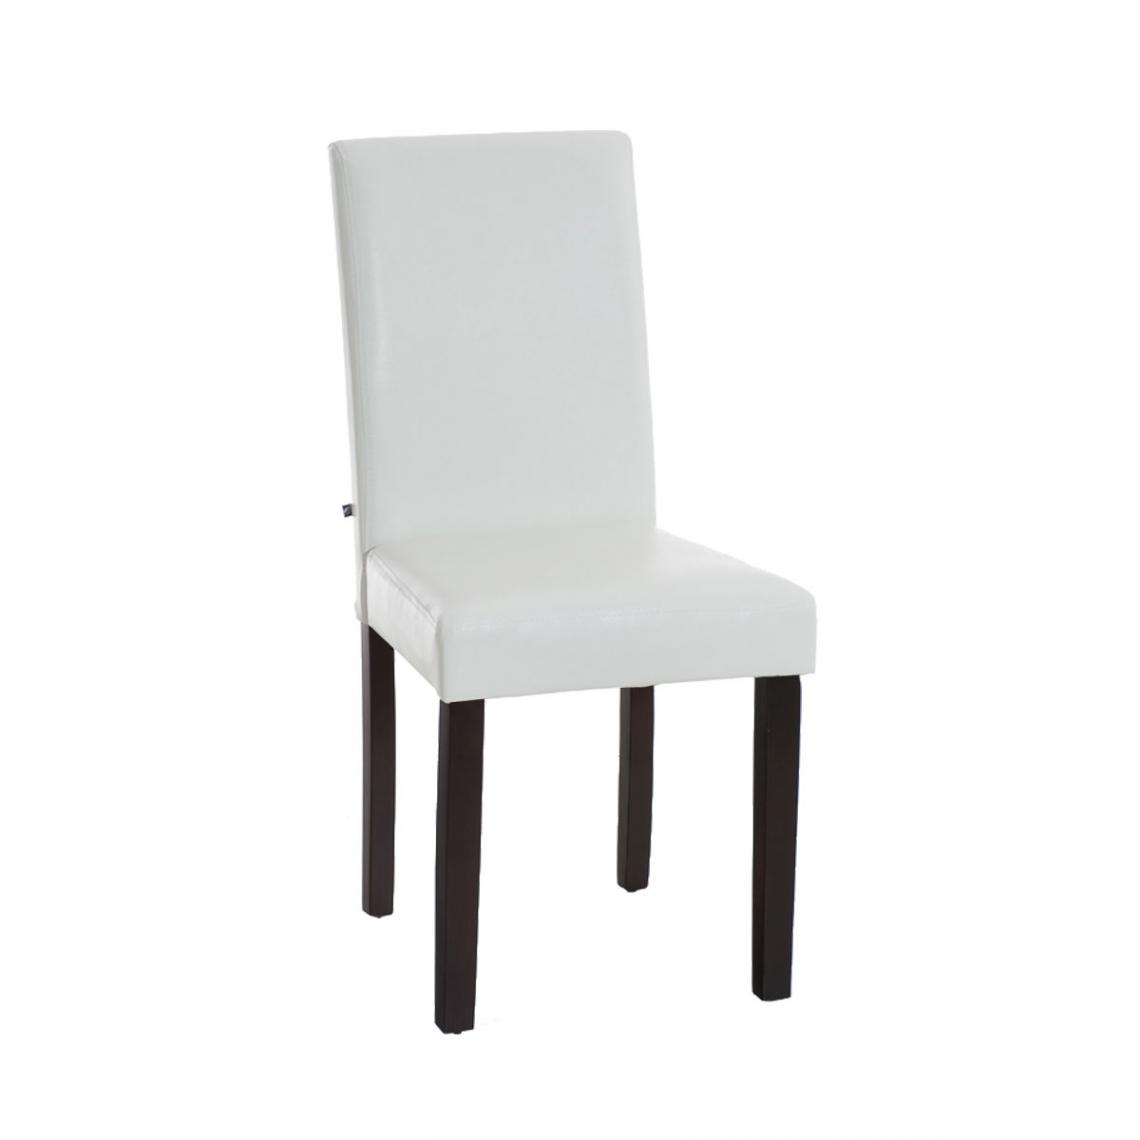 Icaverne - Joli Chaise de salle à manger edition Rabat marron foncé couleur blanc - Chaises